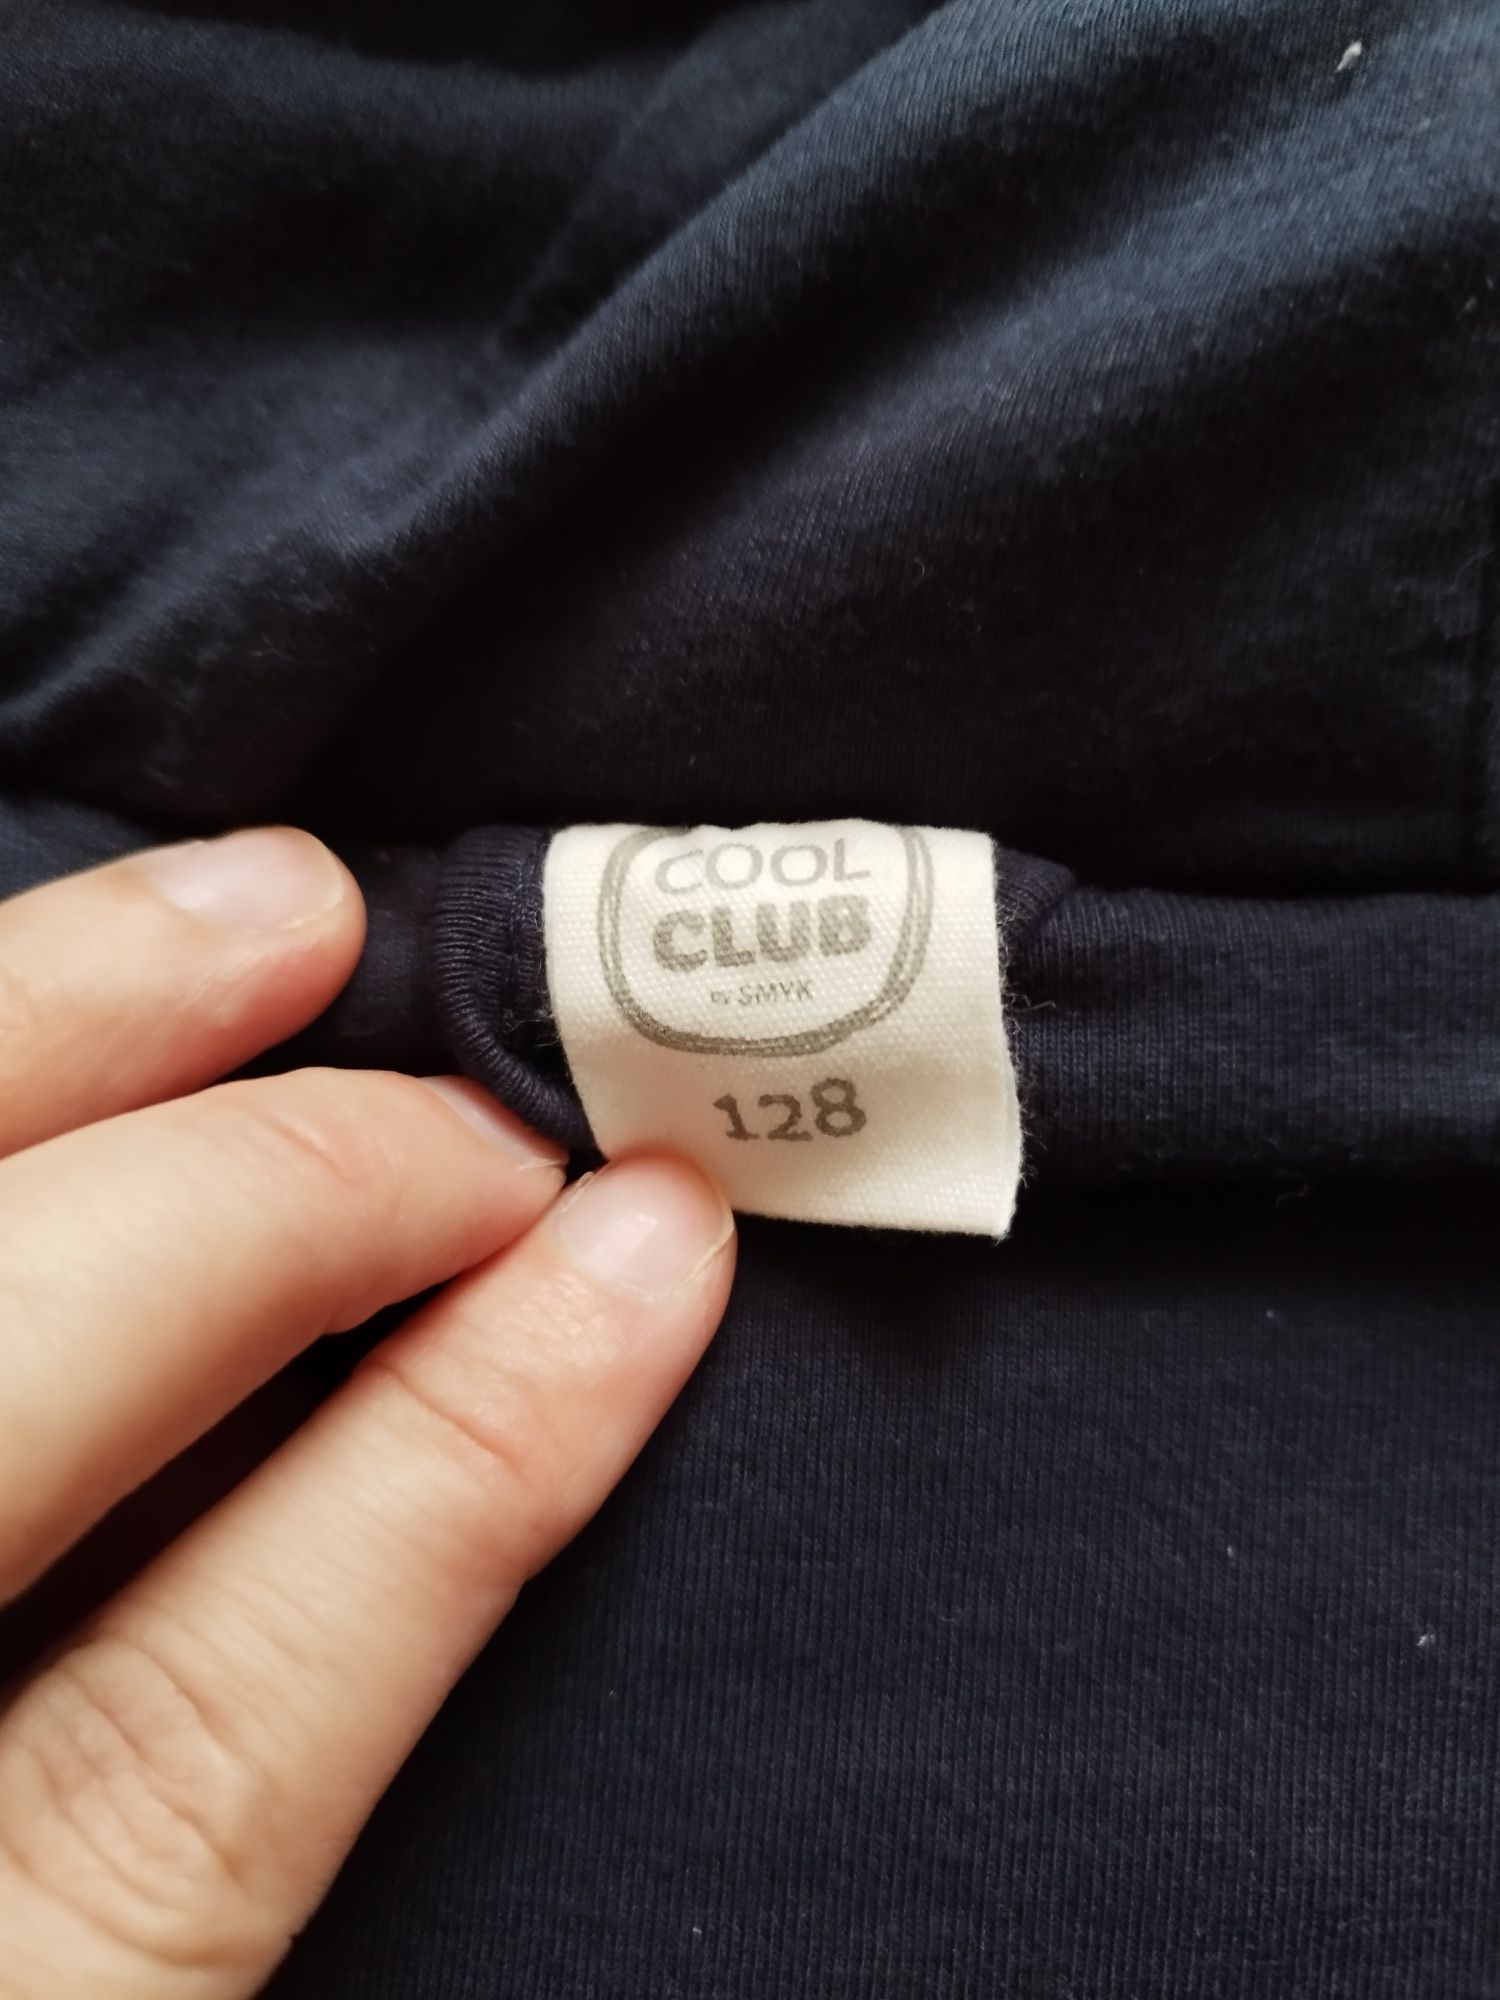 Bluza miś, CoolClub, rozmiar 128